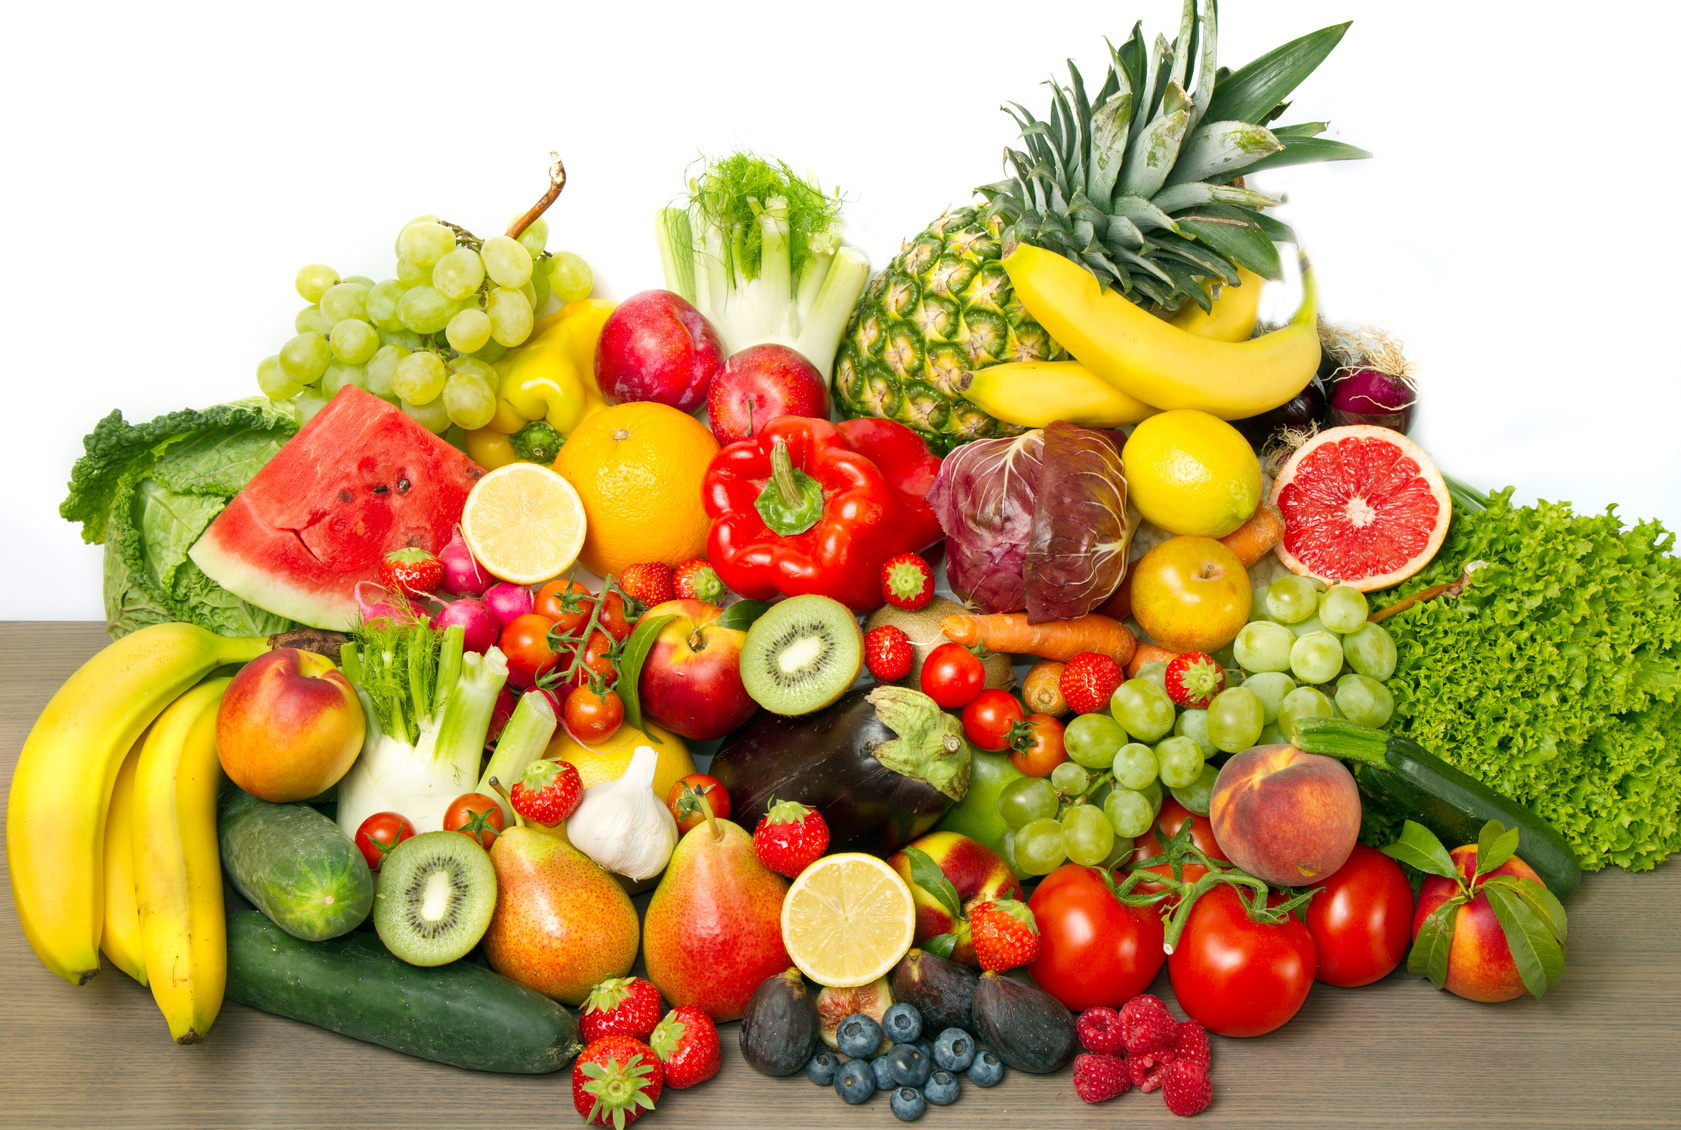 Tumori e infarto, 800 g di frutta e verdura allungano la vita